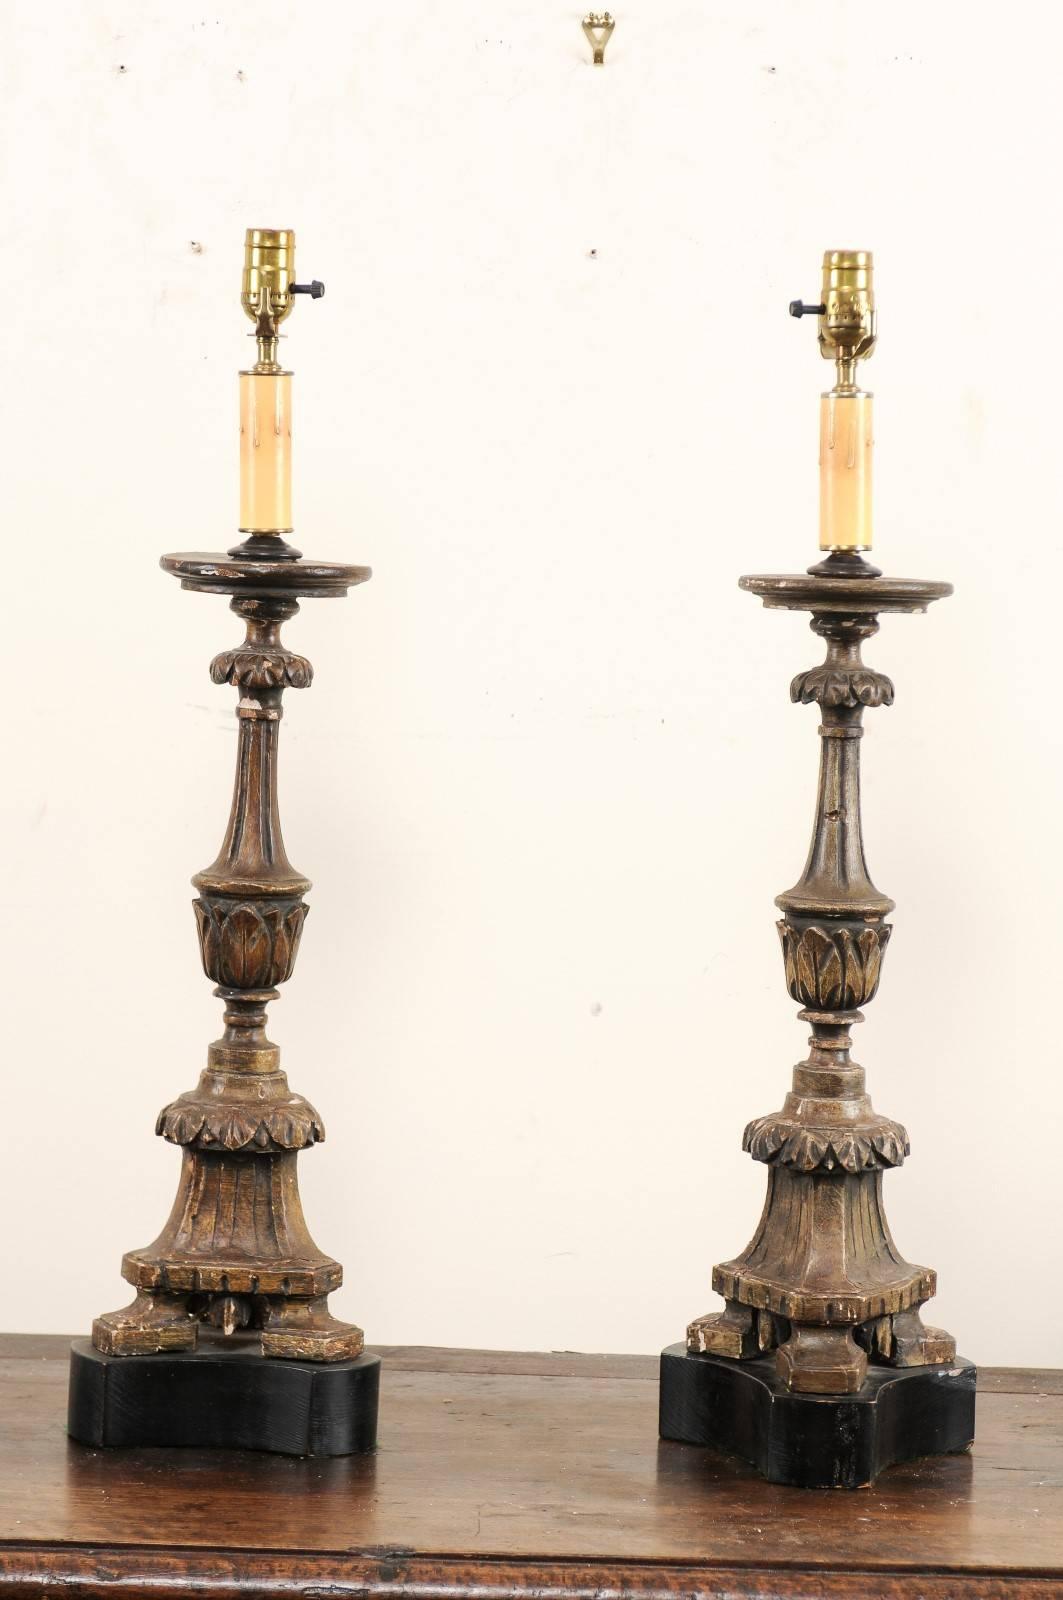 Une paire de bâtons d'autel italiens en bois sculpté du 19ème siècle transformés en lampes de table. Cette paire de lampes de table italiennes a été façonnée à partir d'anciens bâtons d'autel en bois sculpté. Les bâtons d'autel présentent de jolis